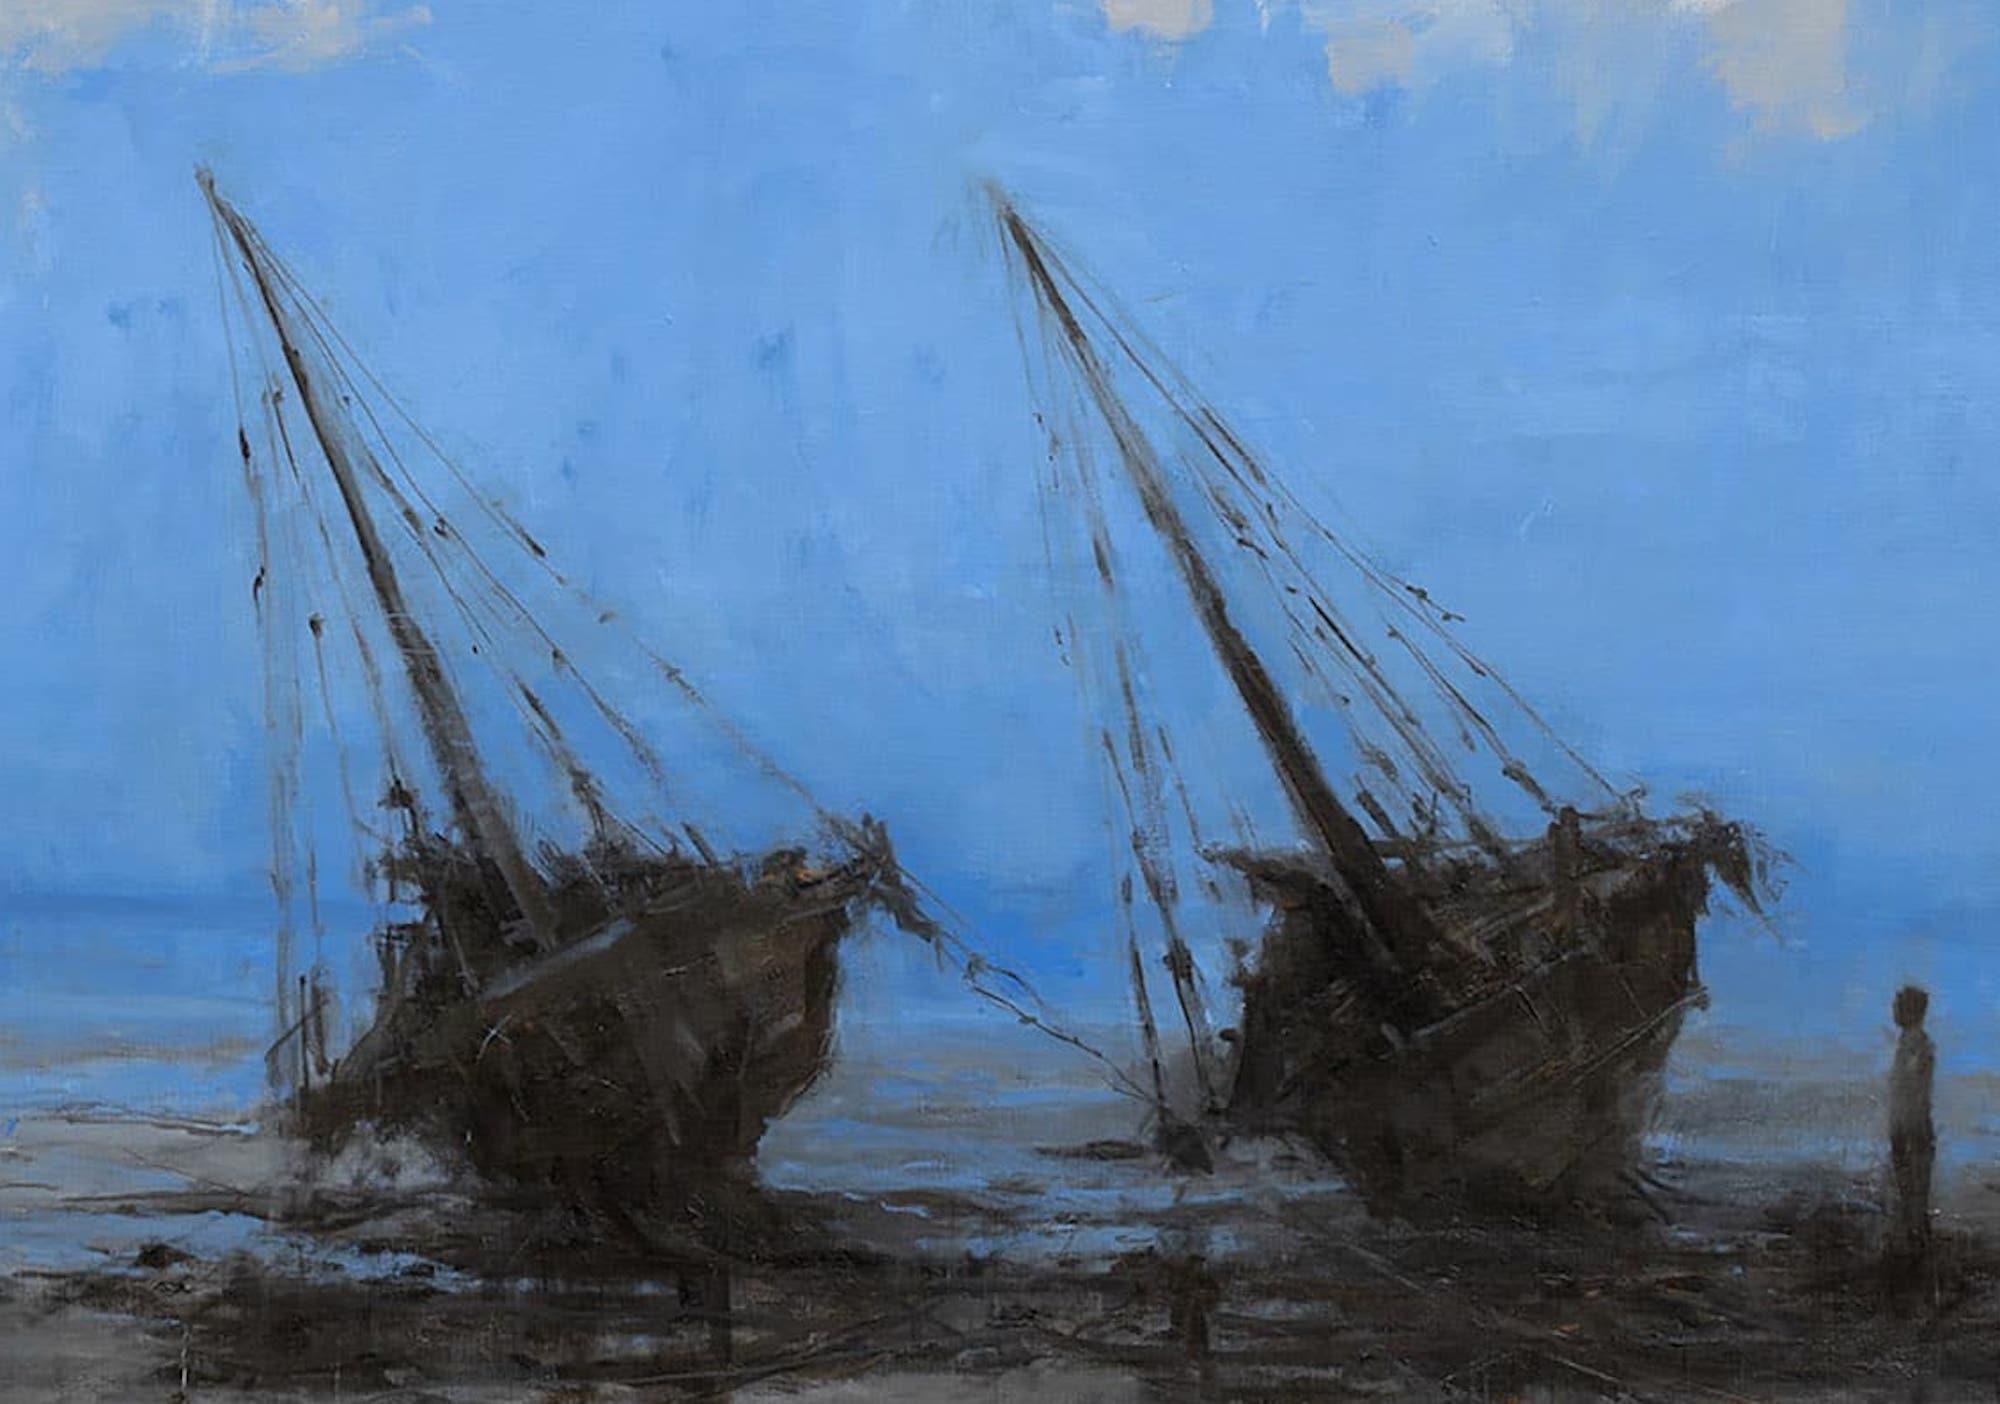 Barcas en Bagamoyo IV by Calo Carratalá - Meereslandschaft, blaue Farben, Boote im Angebot 4